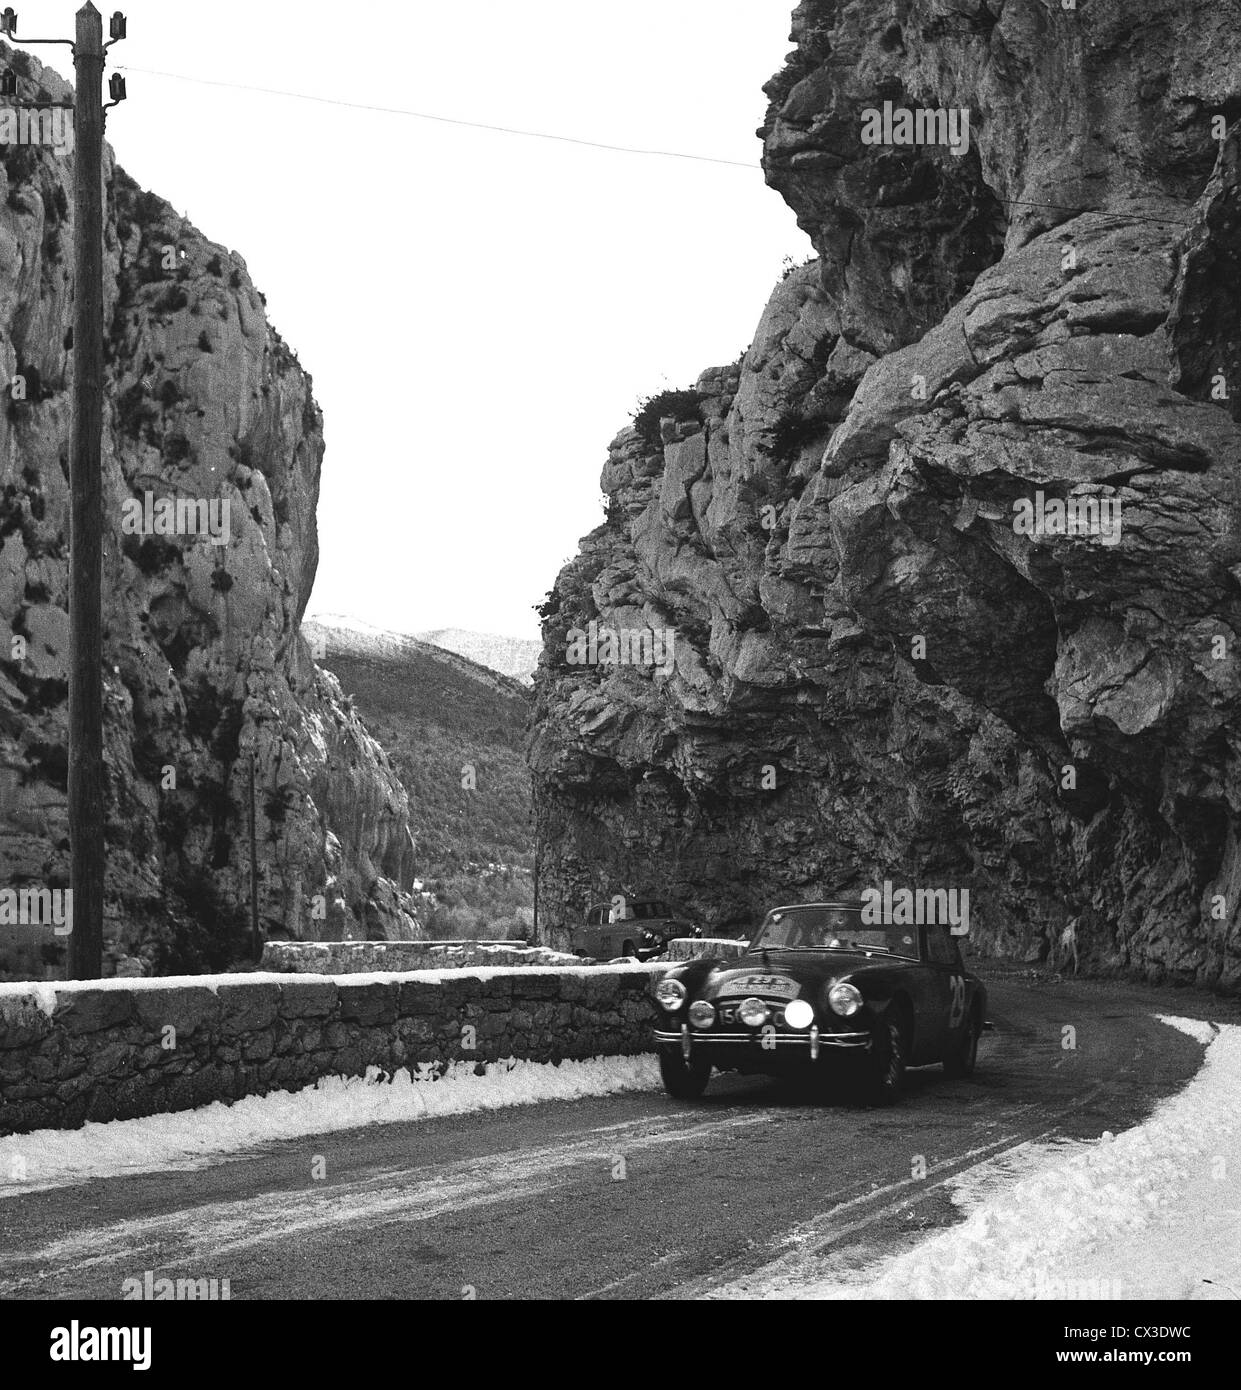 C.a. Aceca durante il 1958 rally di Monte Carlo Foto Stock